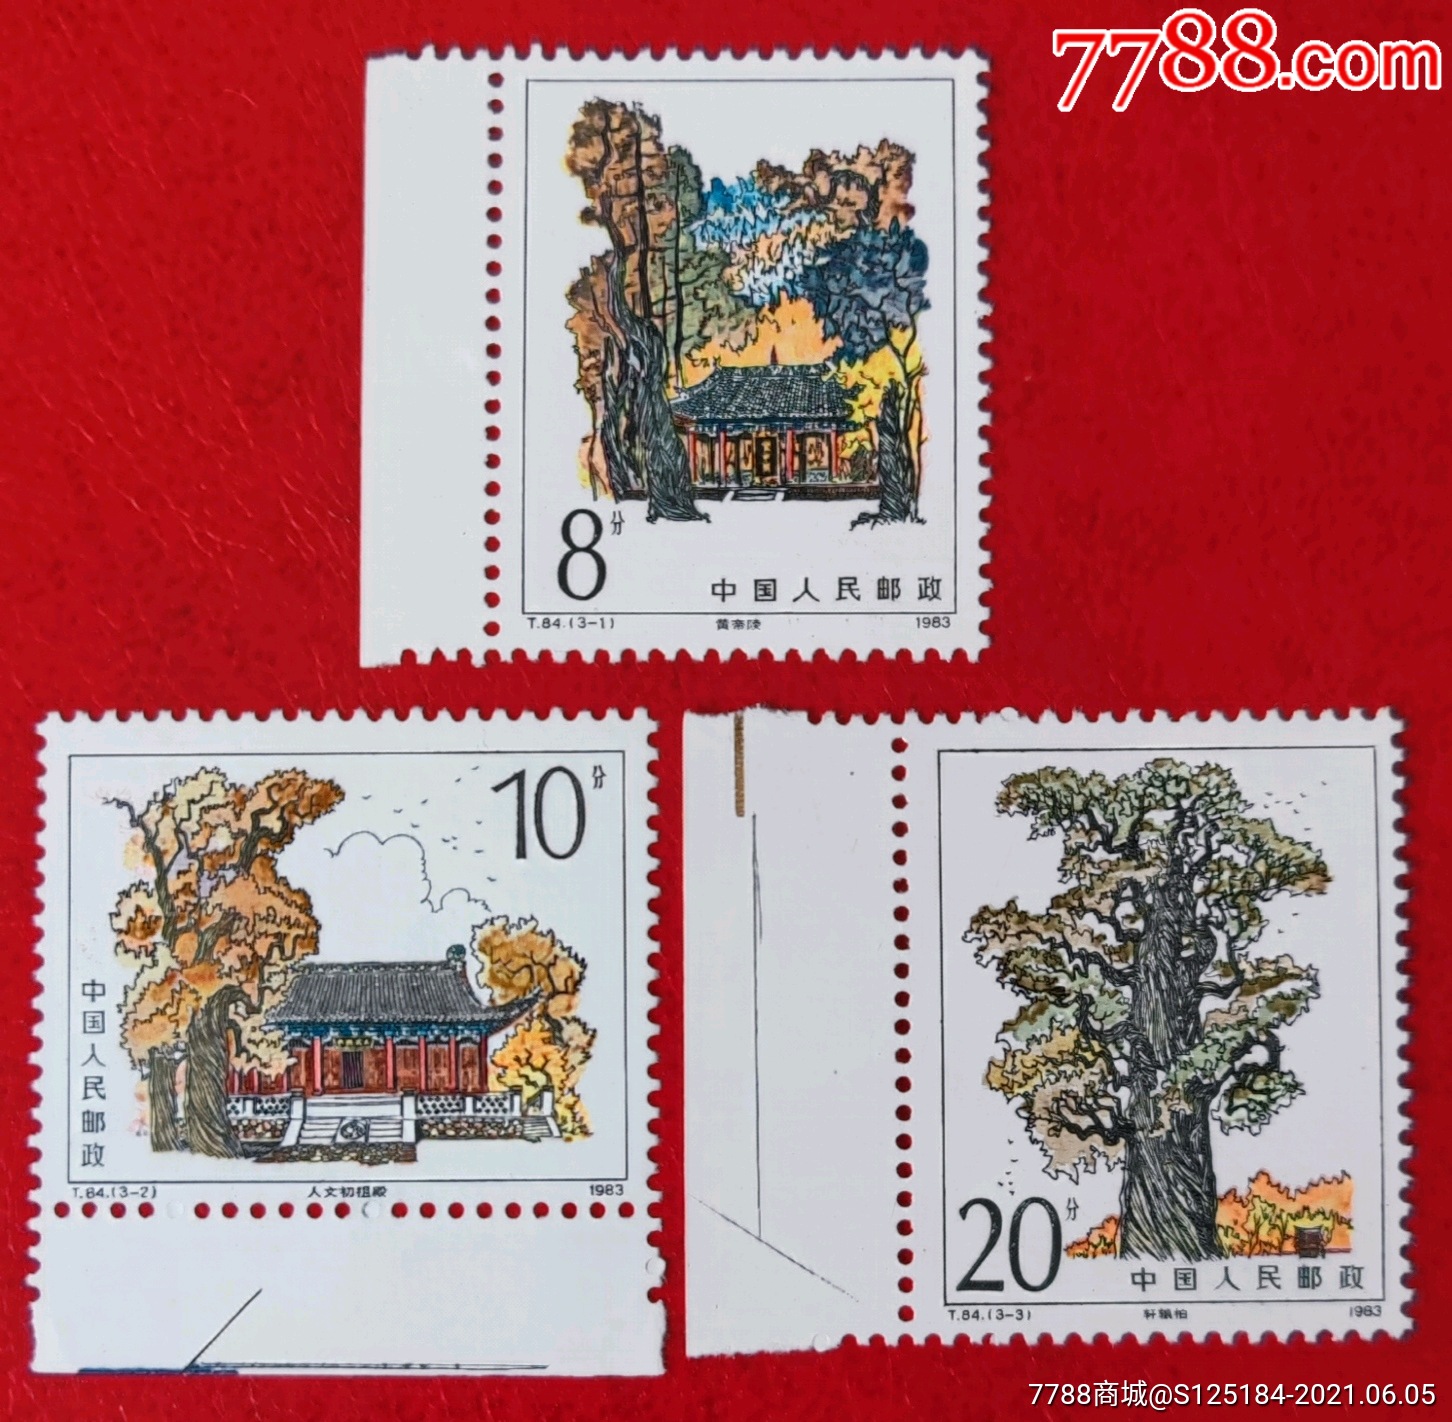 1983年t84黄帝陵邮票带边全新原胶全品套票